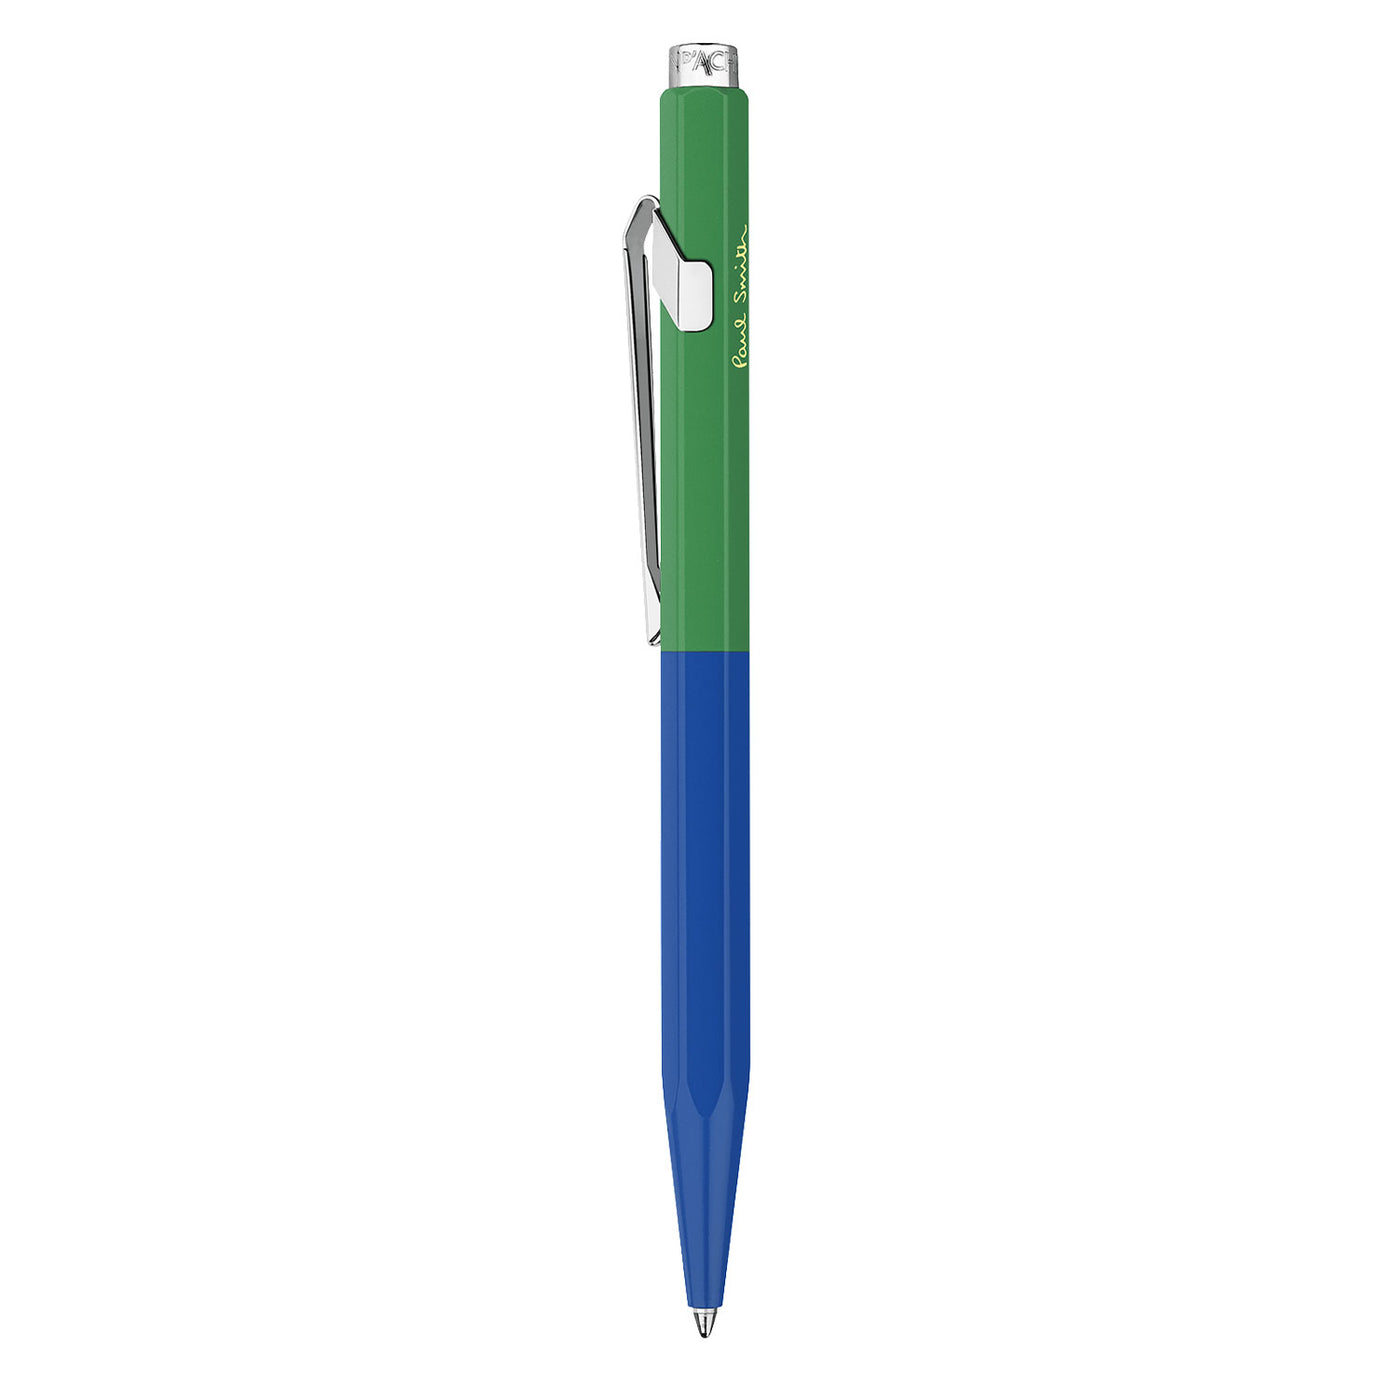 Caran d'Ache 849 Paul Smith Ball Pen - Cobalt Blue & Emerald Green (Limited Edition) 2